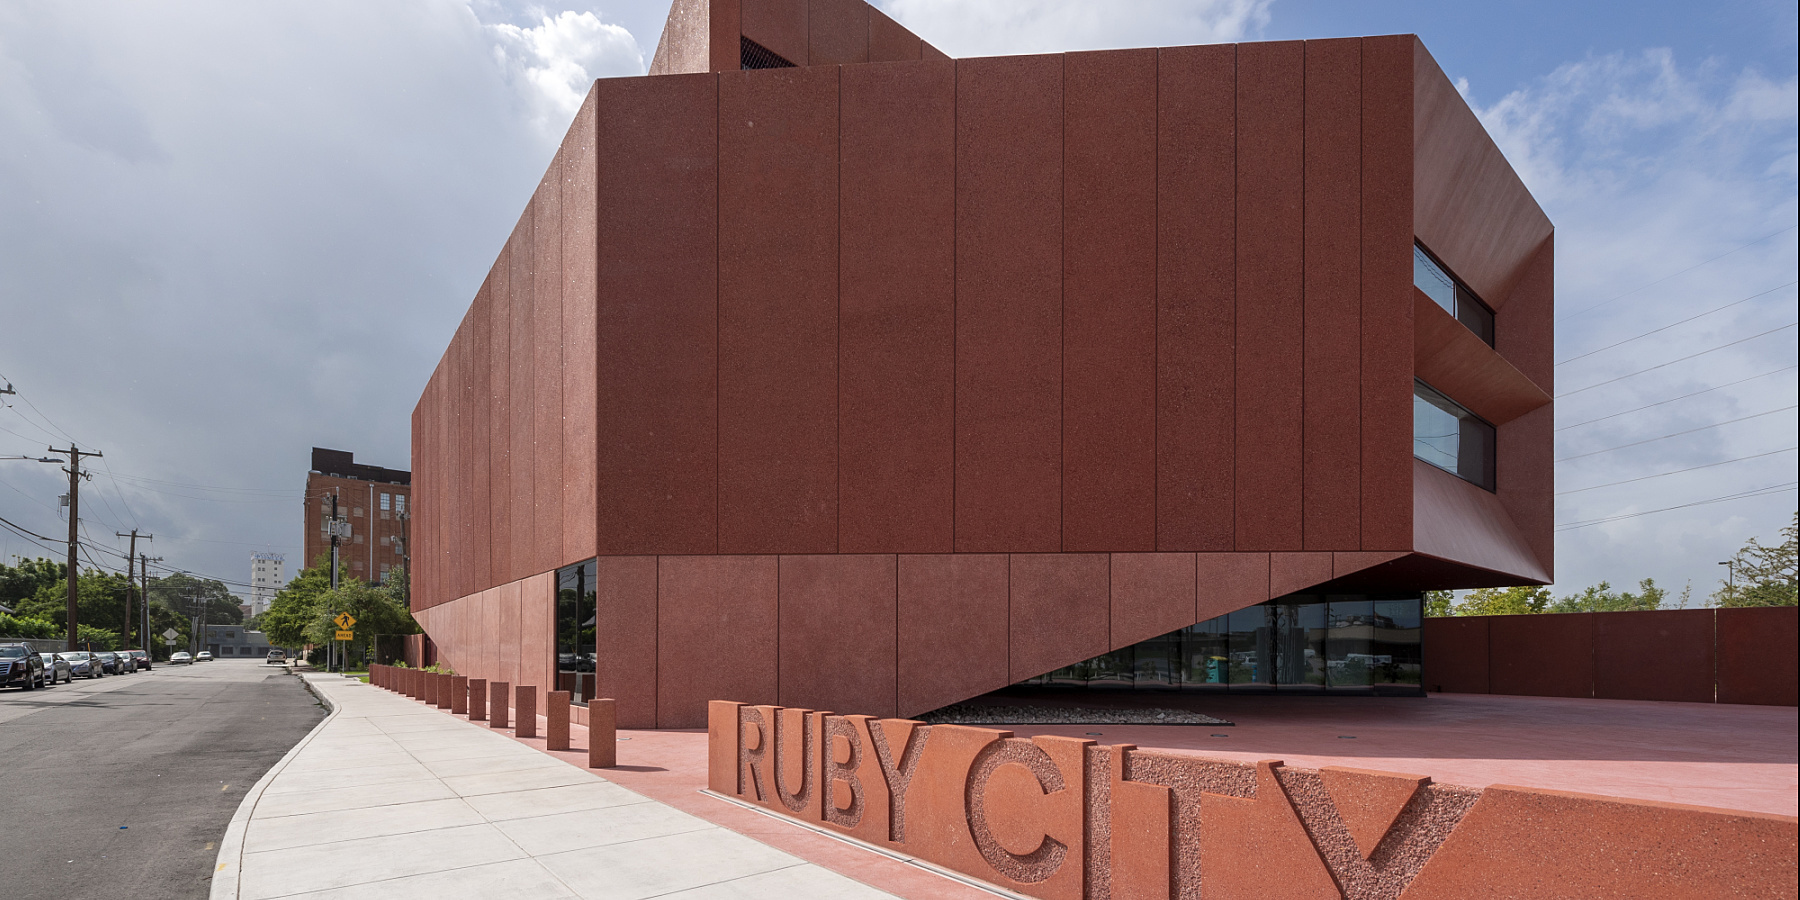 Neues Licht von ERCO für die Ruby City Galerie in Texas, San Antonio, USA